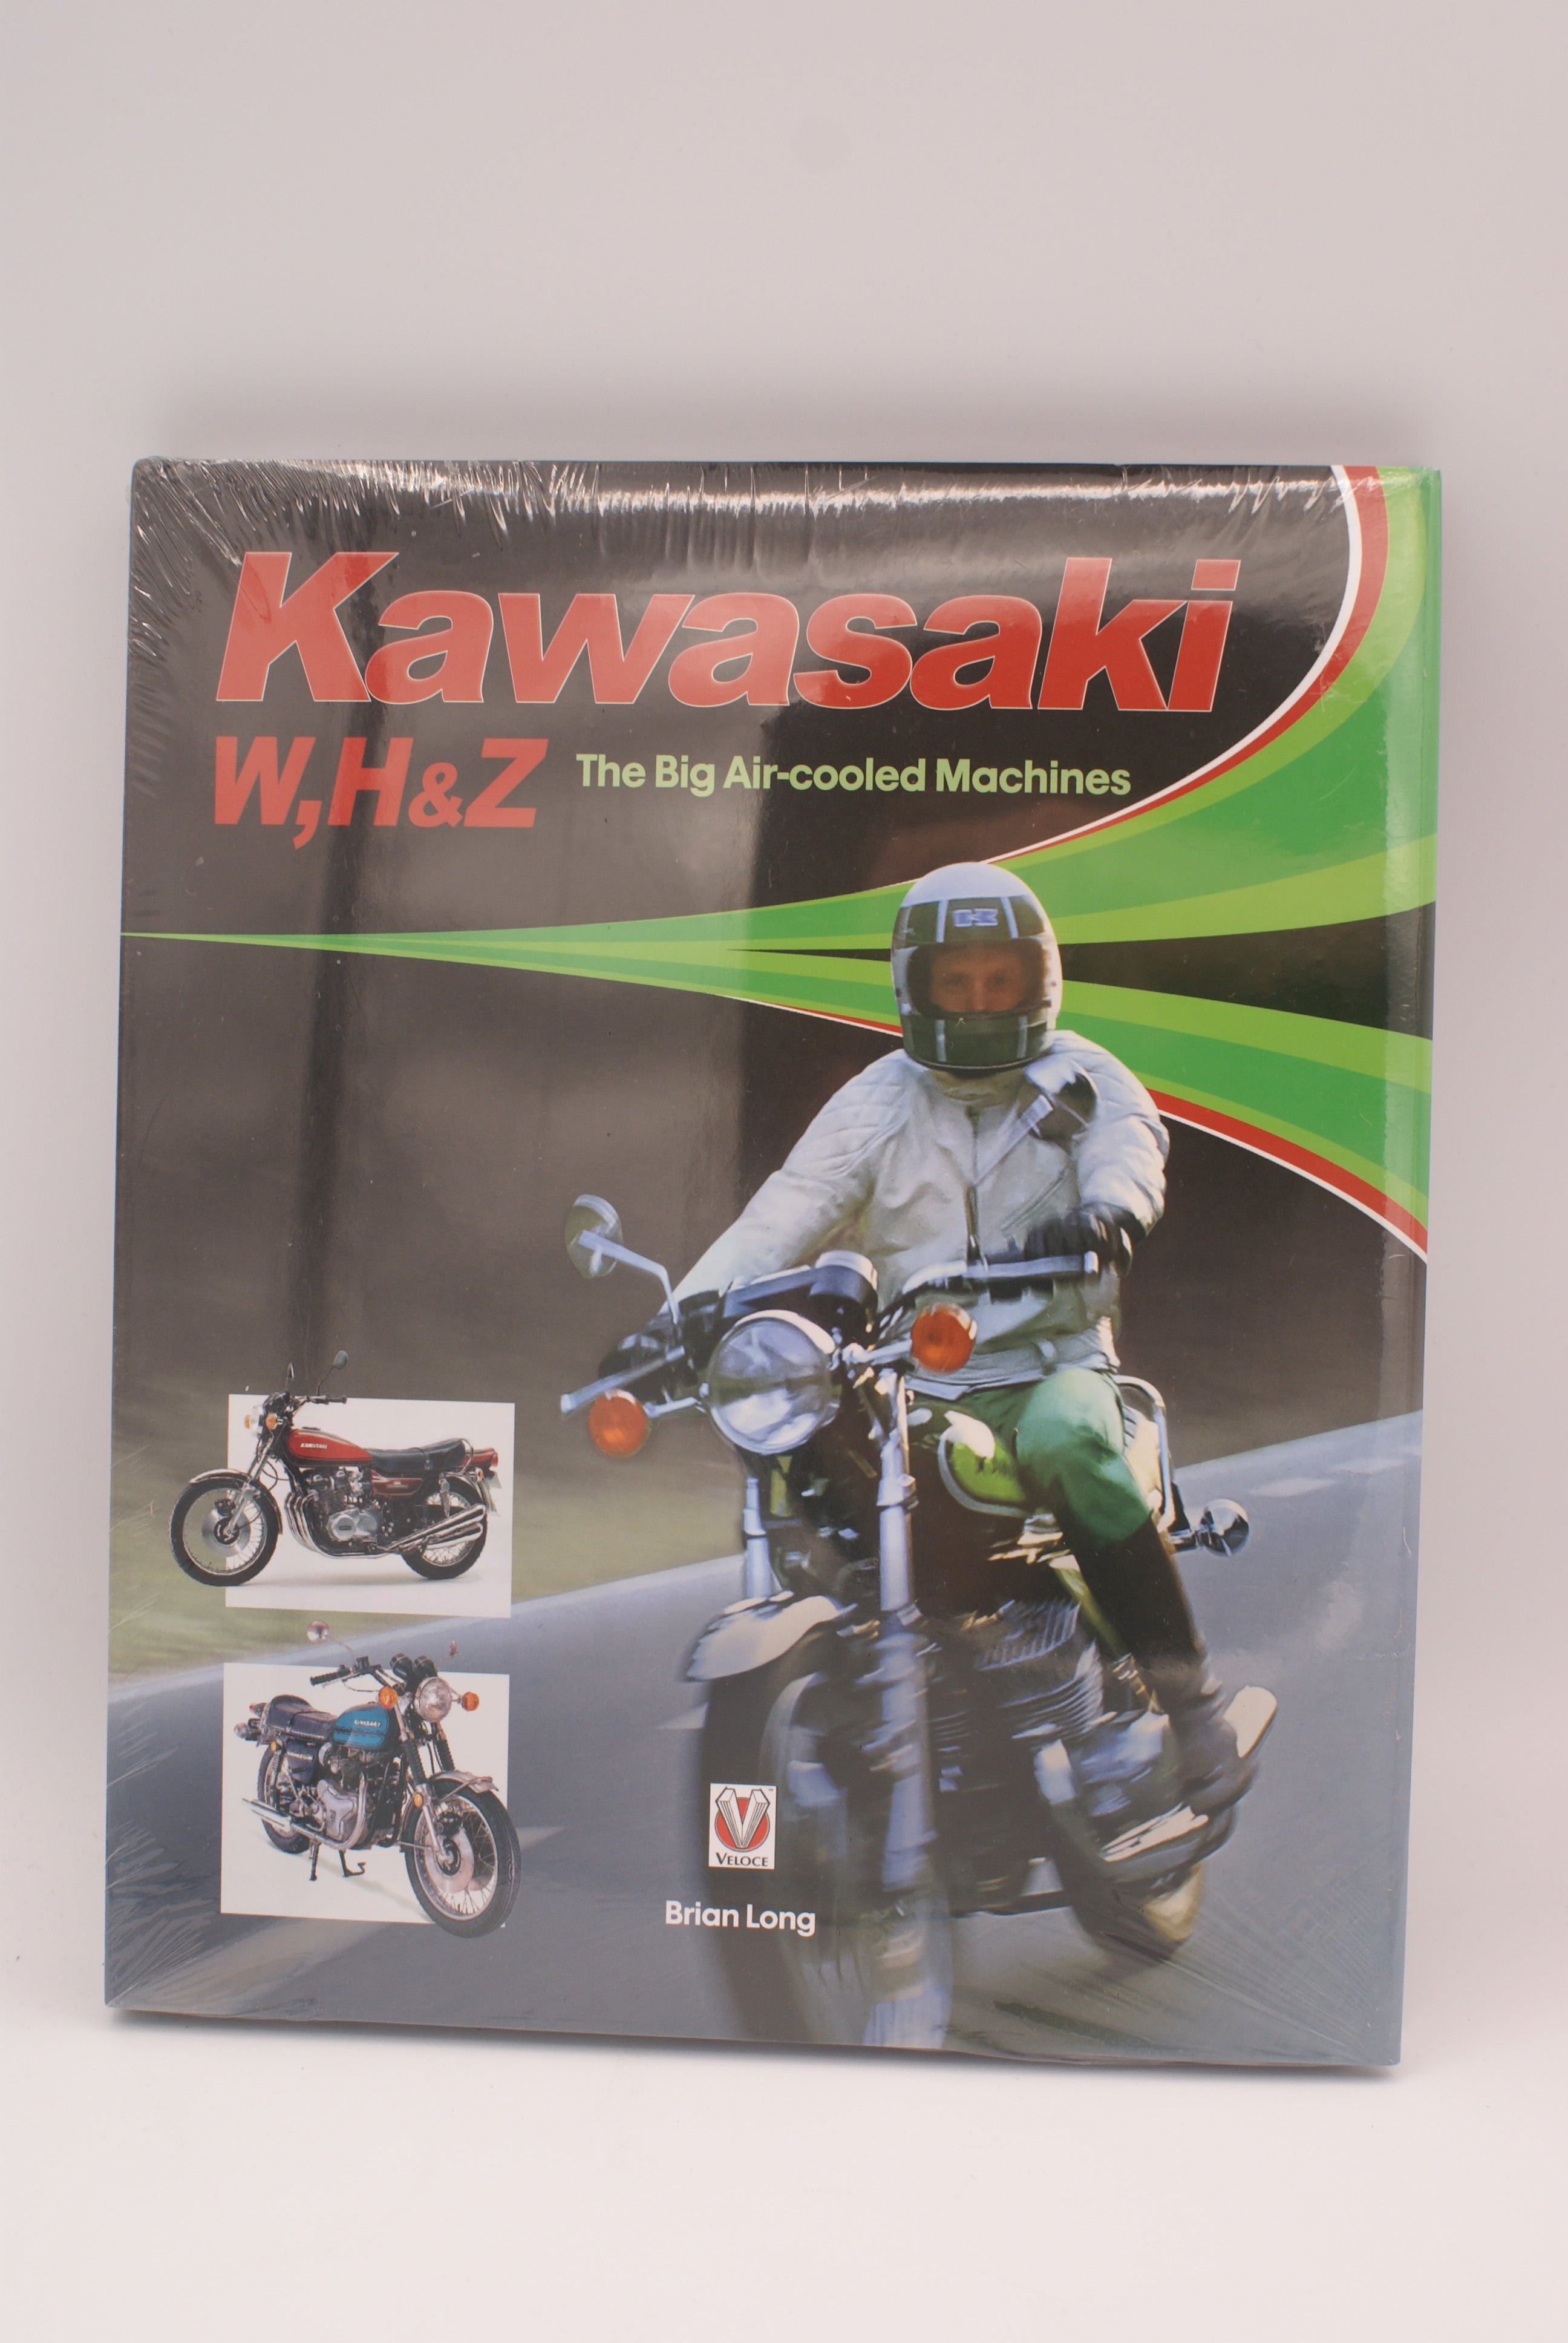 Kawasaki W,H & Z